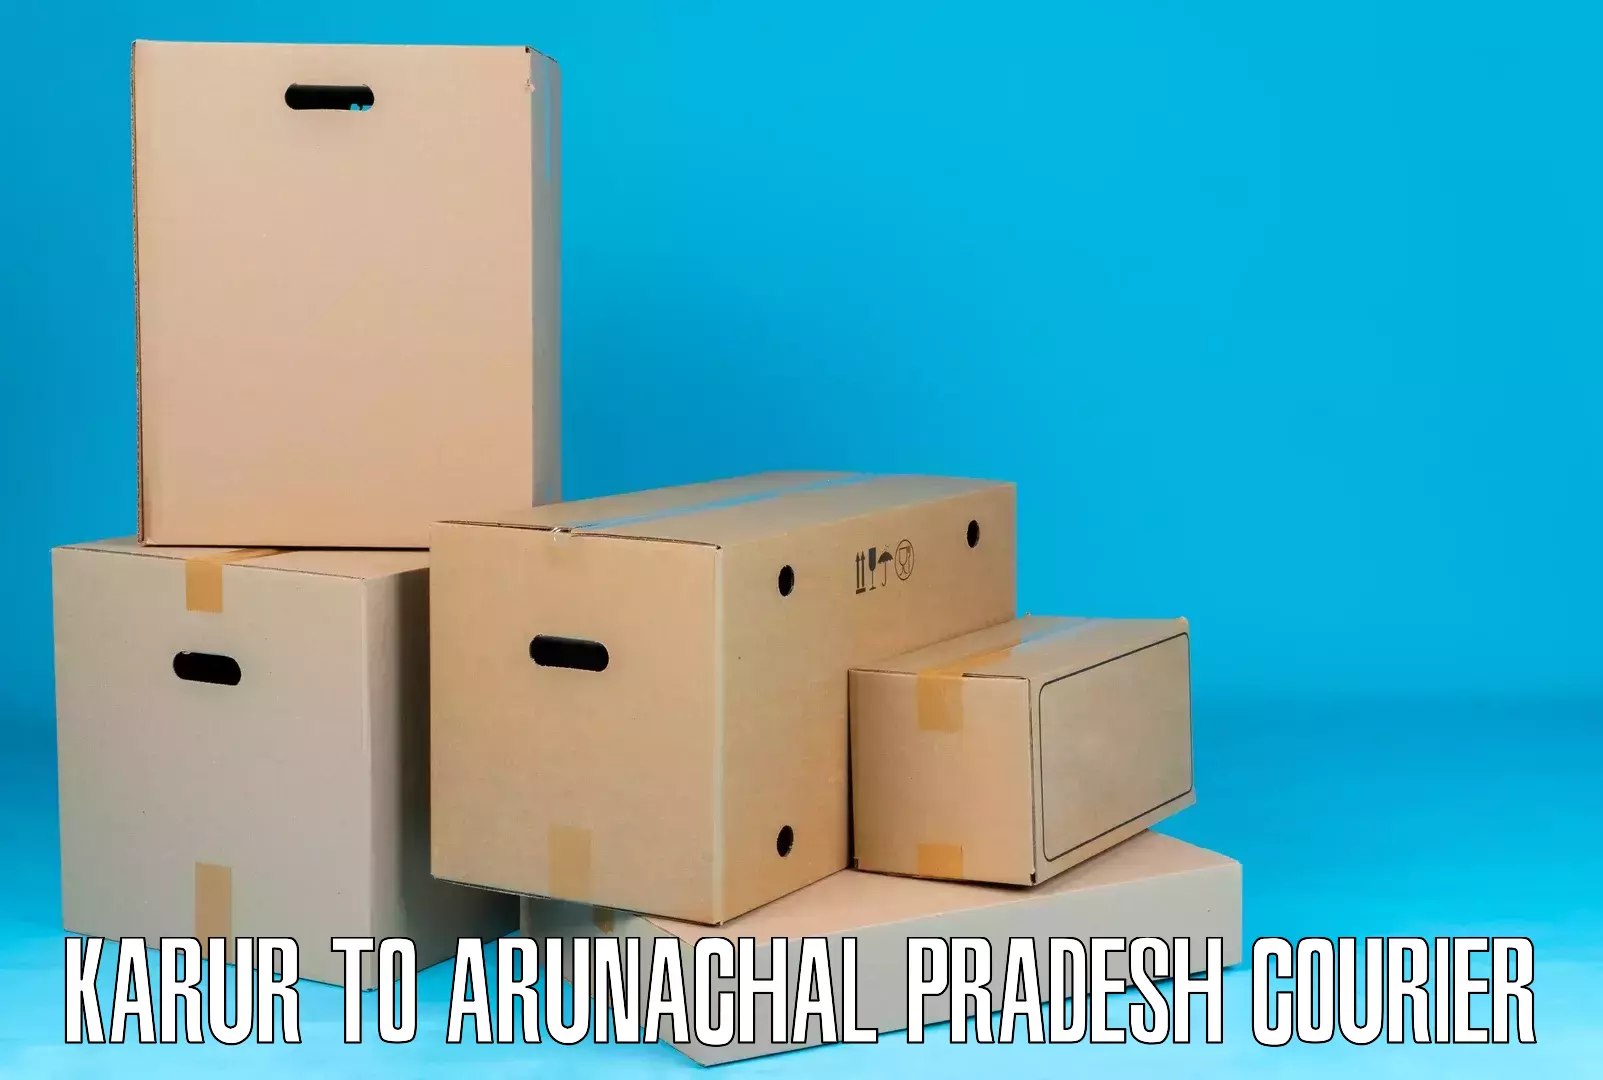 Residential courier service Karur to Arunachal Pradesh